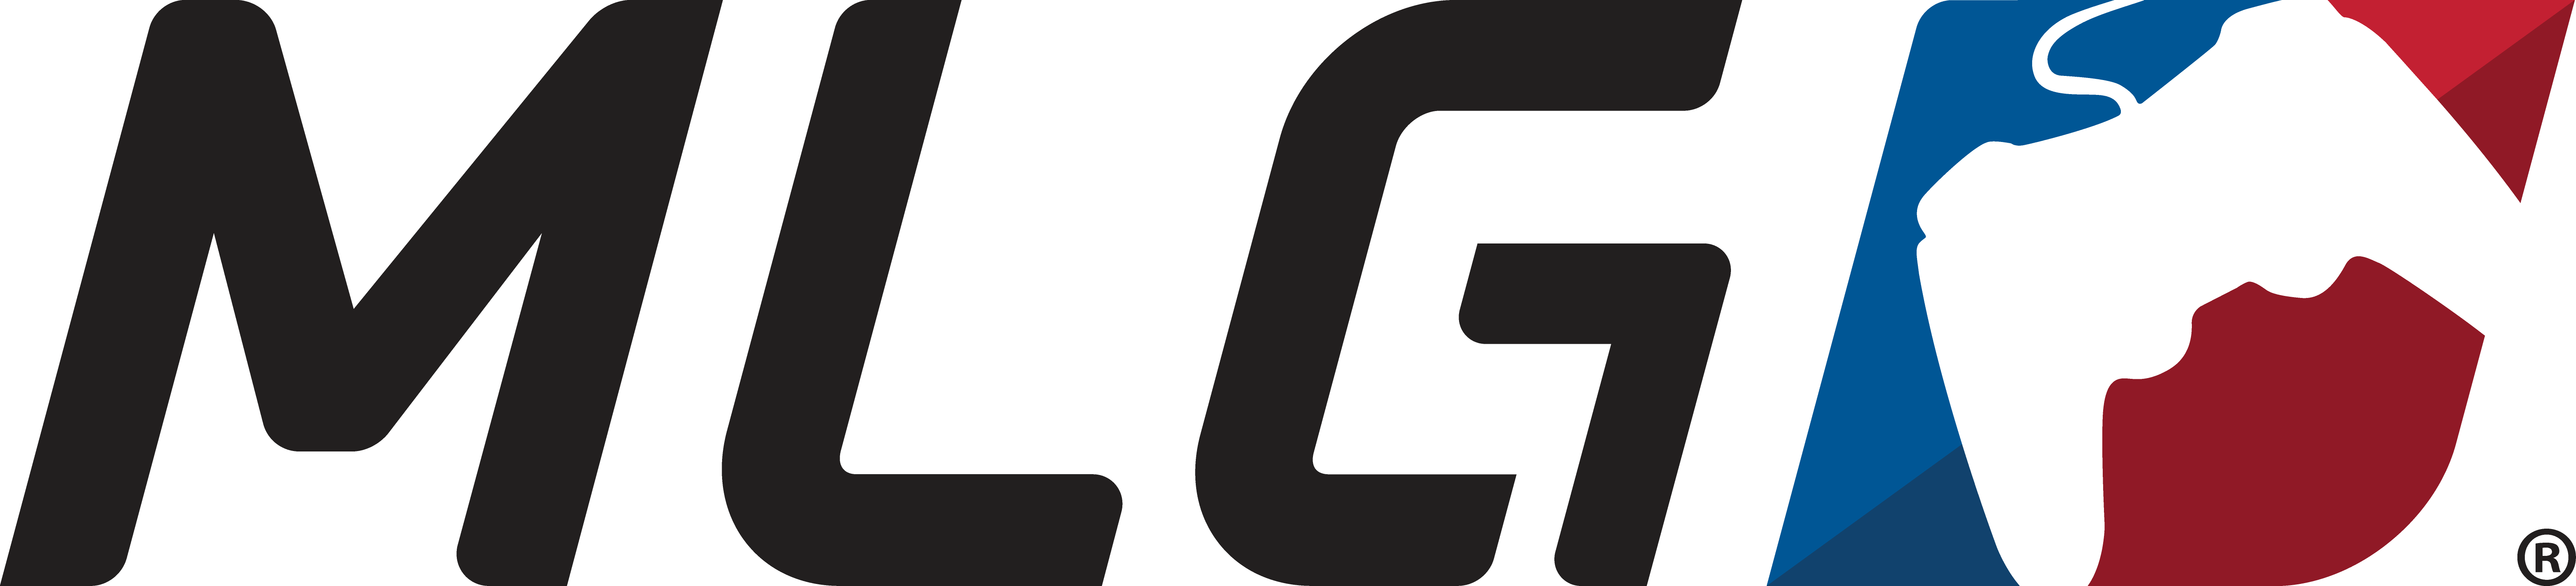 Mlg Logo Digital Major League Gaming